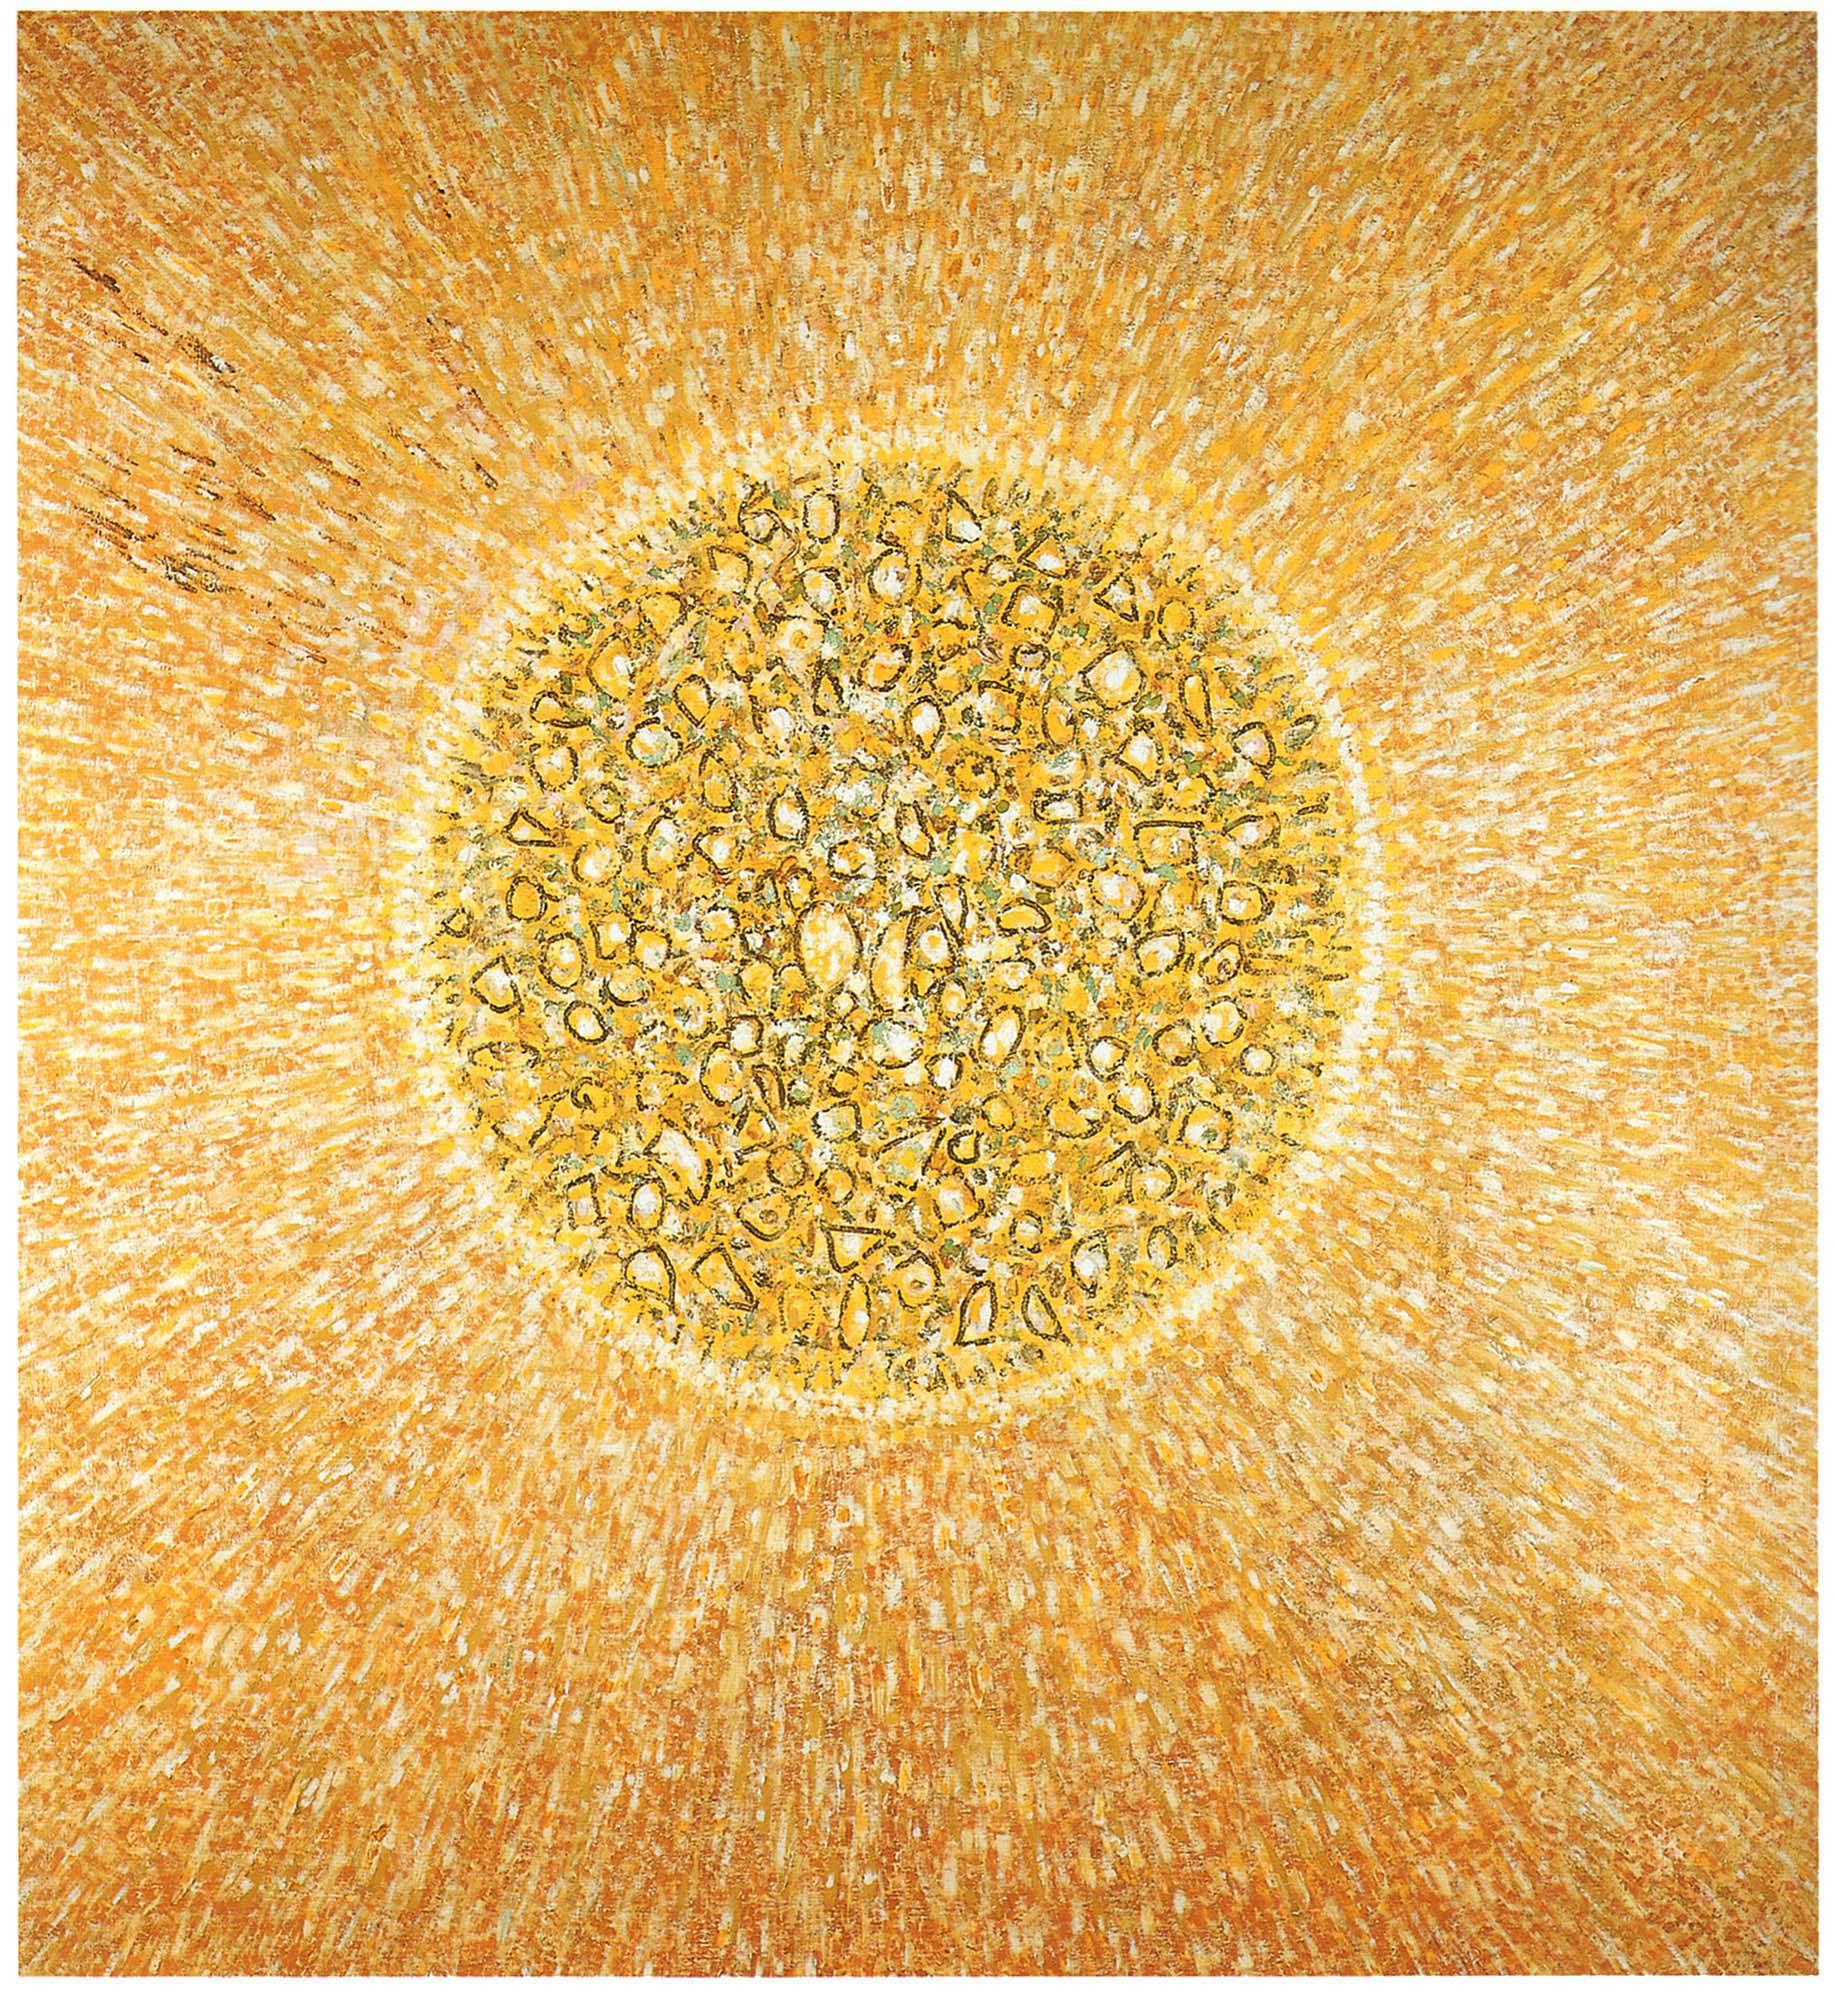 Golden Center
1964
Oil on linen
60 x 56 in. (152.4 x 142.2 cm)
 – The Richard Pousette-Dart Foundation